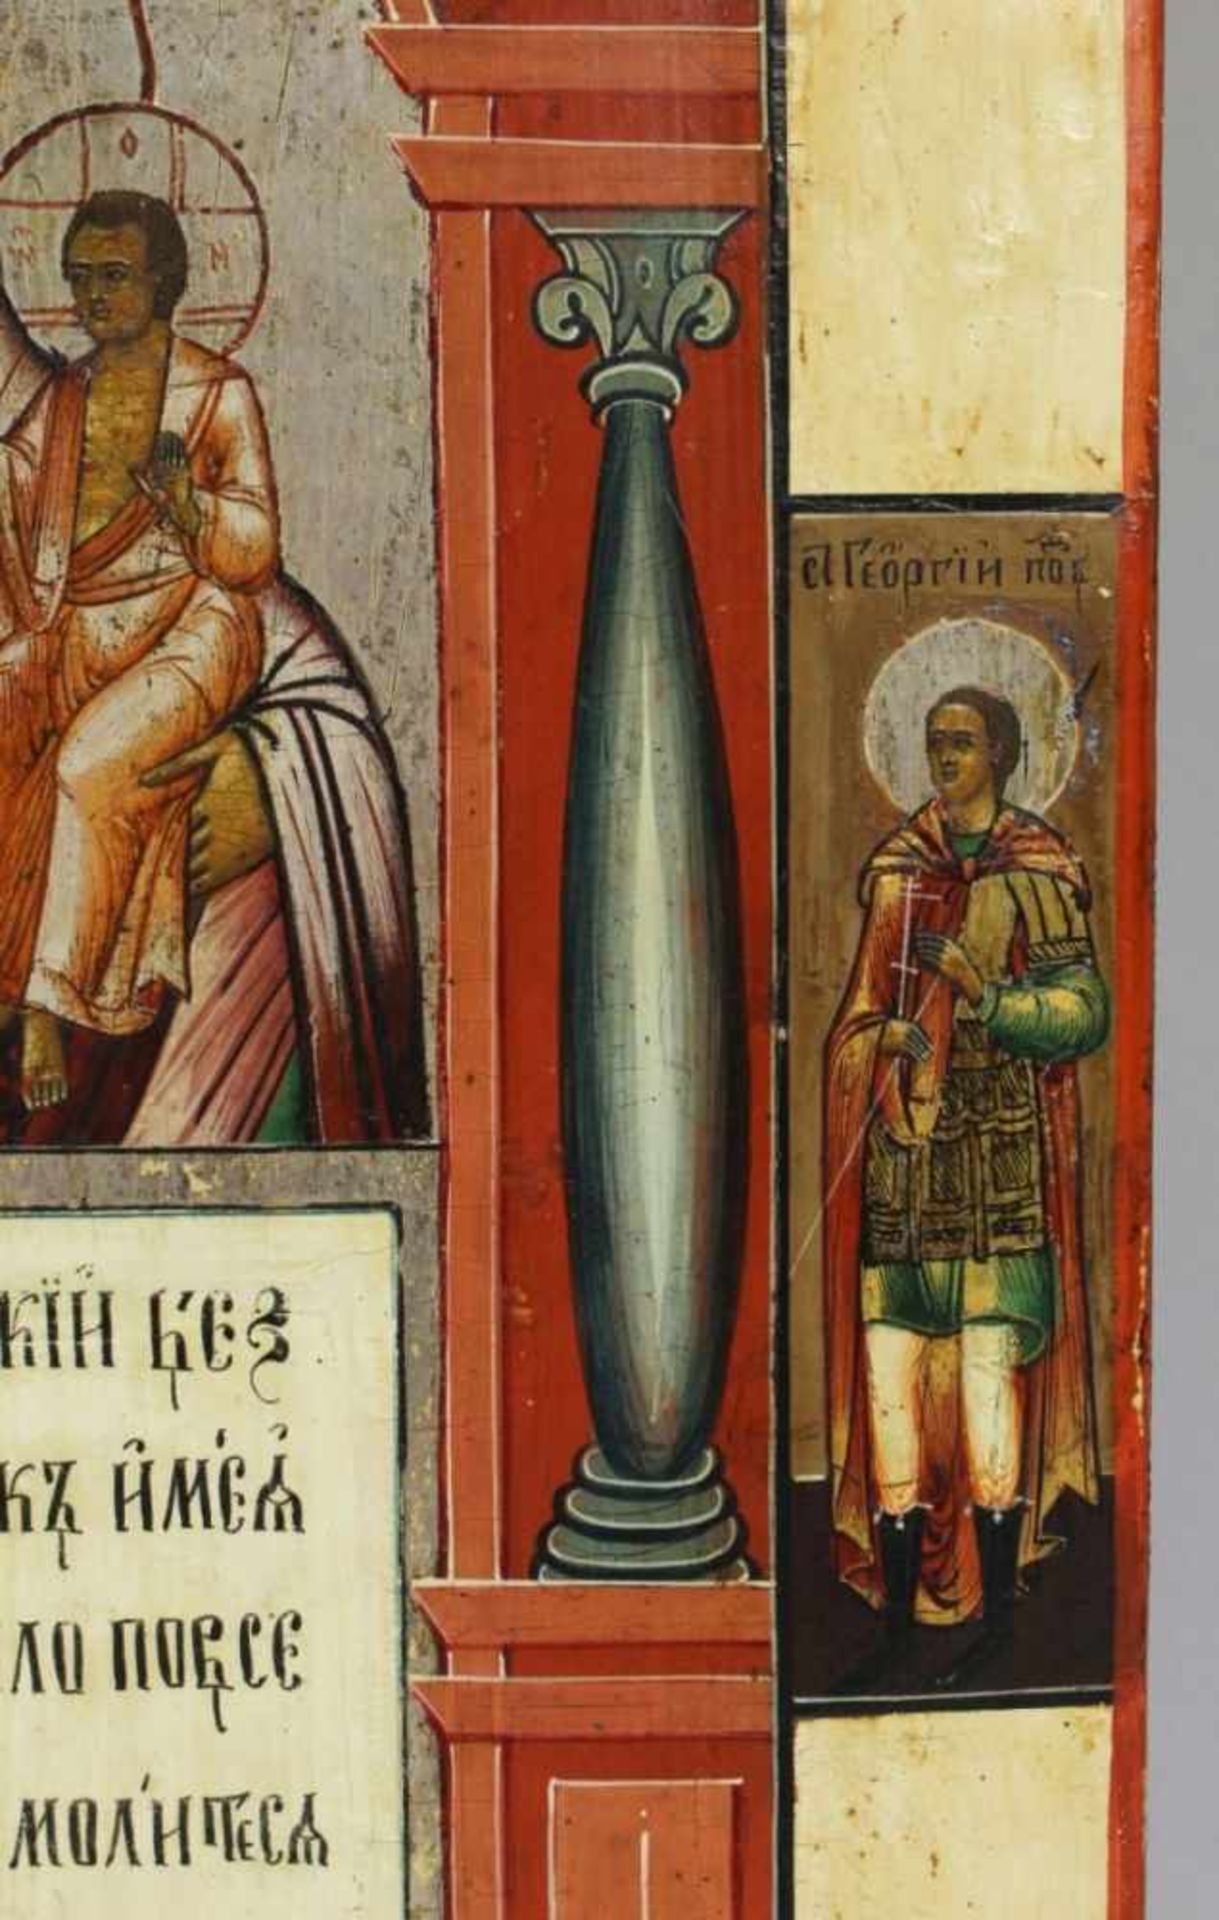 Ikone, Russland, 19. Jh., rechteckige Form, frontseitig in polychromen Eitemperafarben mitSilbe - Bild 2 aus 4